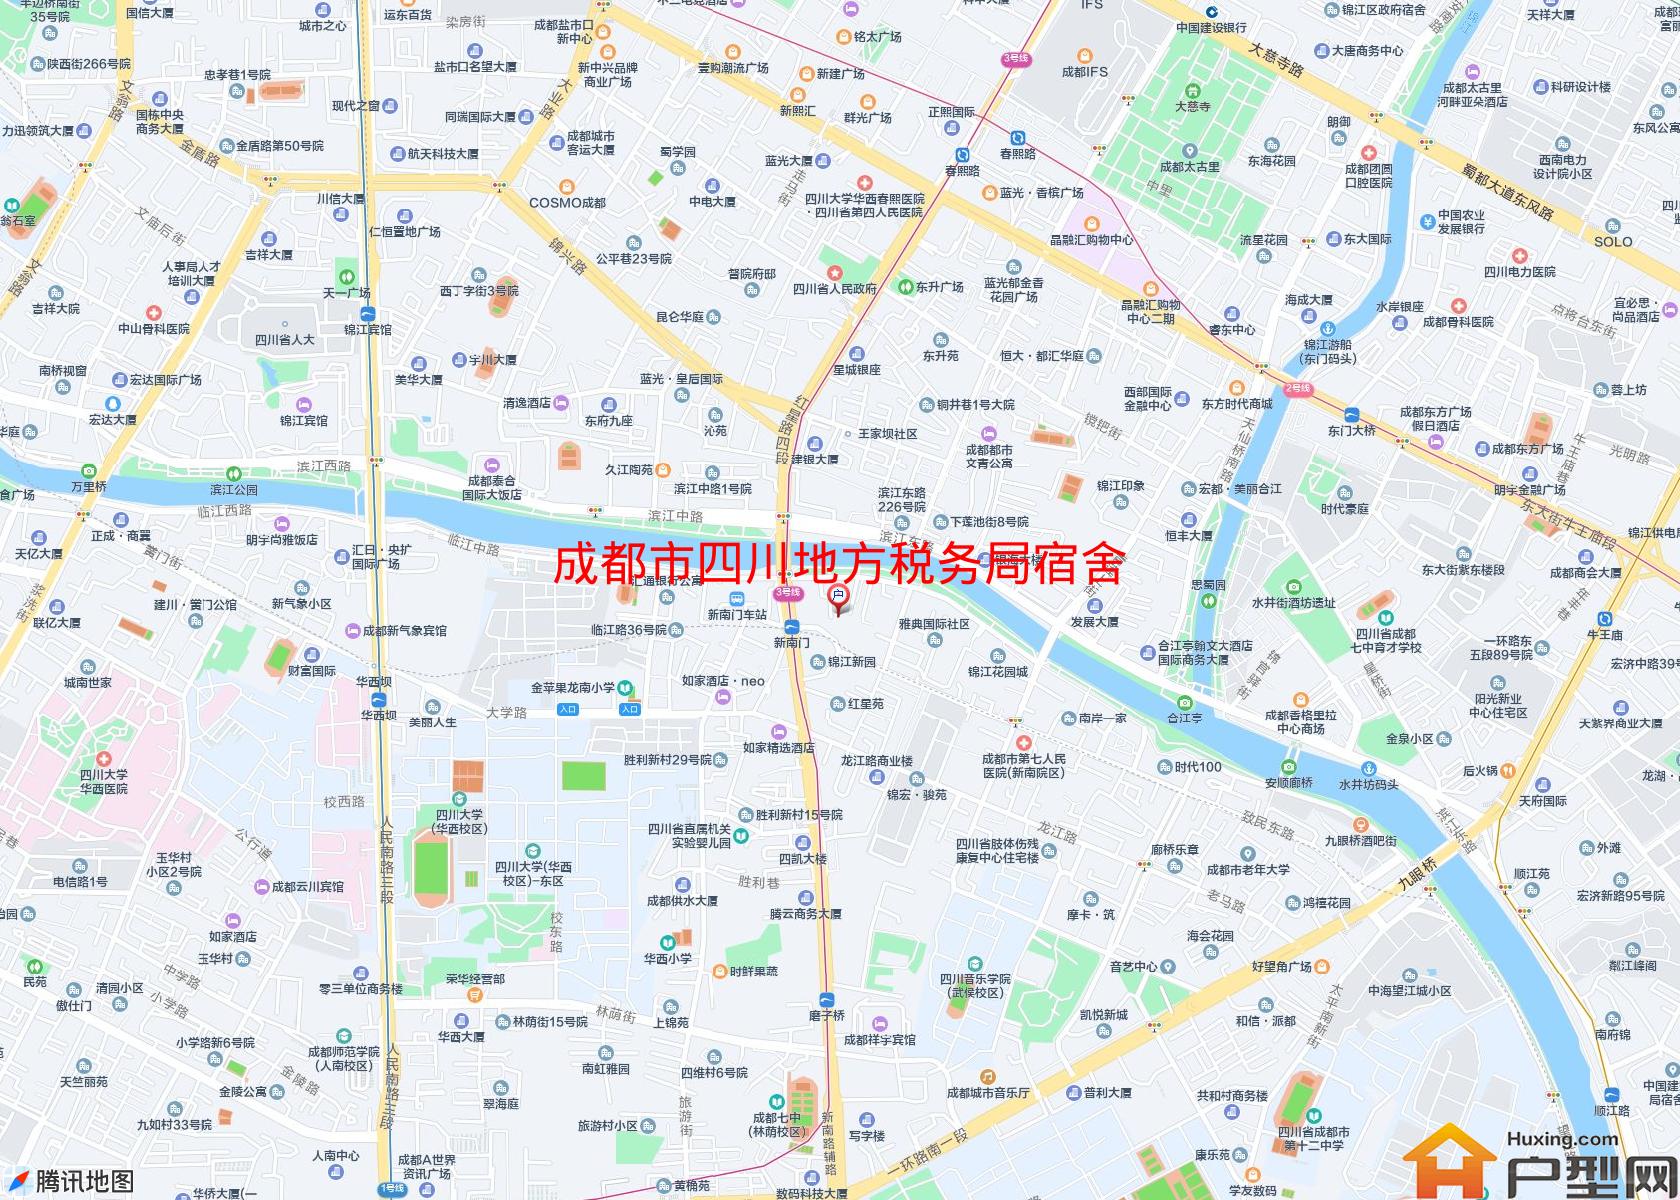 四川地方税务局宿舍小区 - 户型网